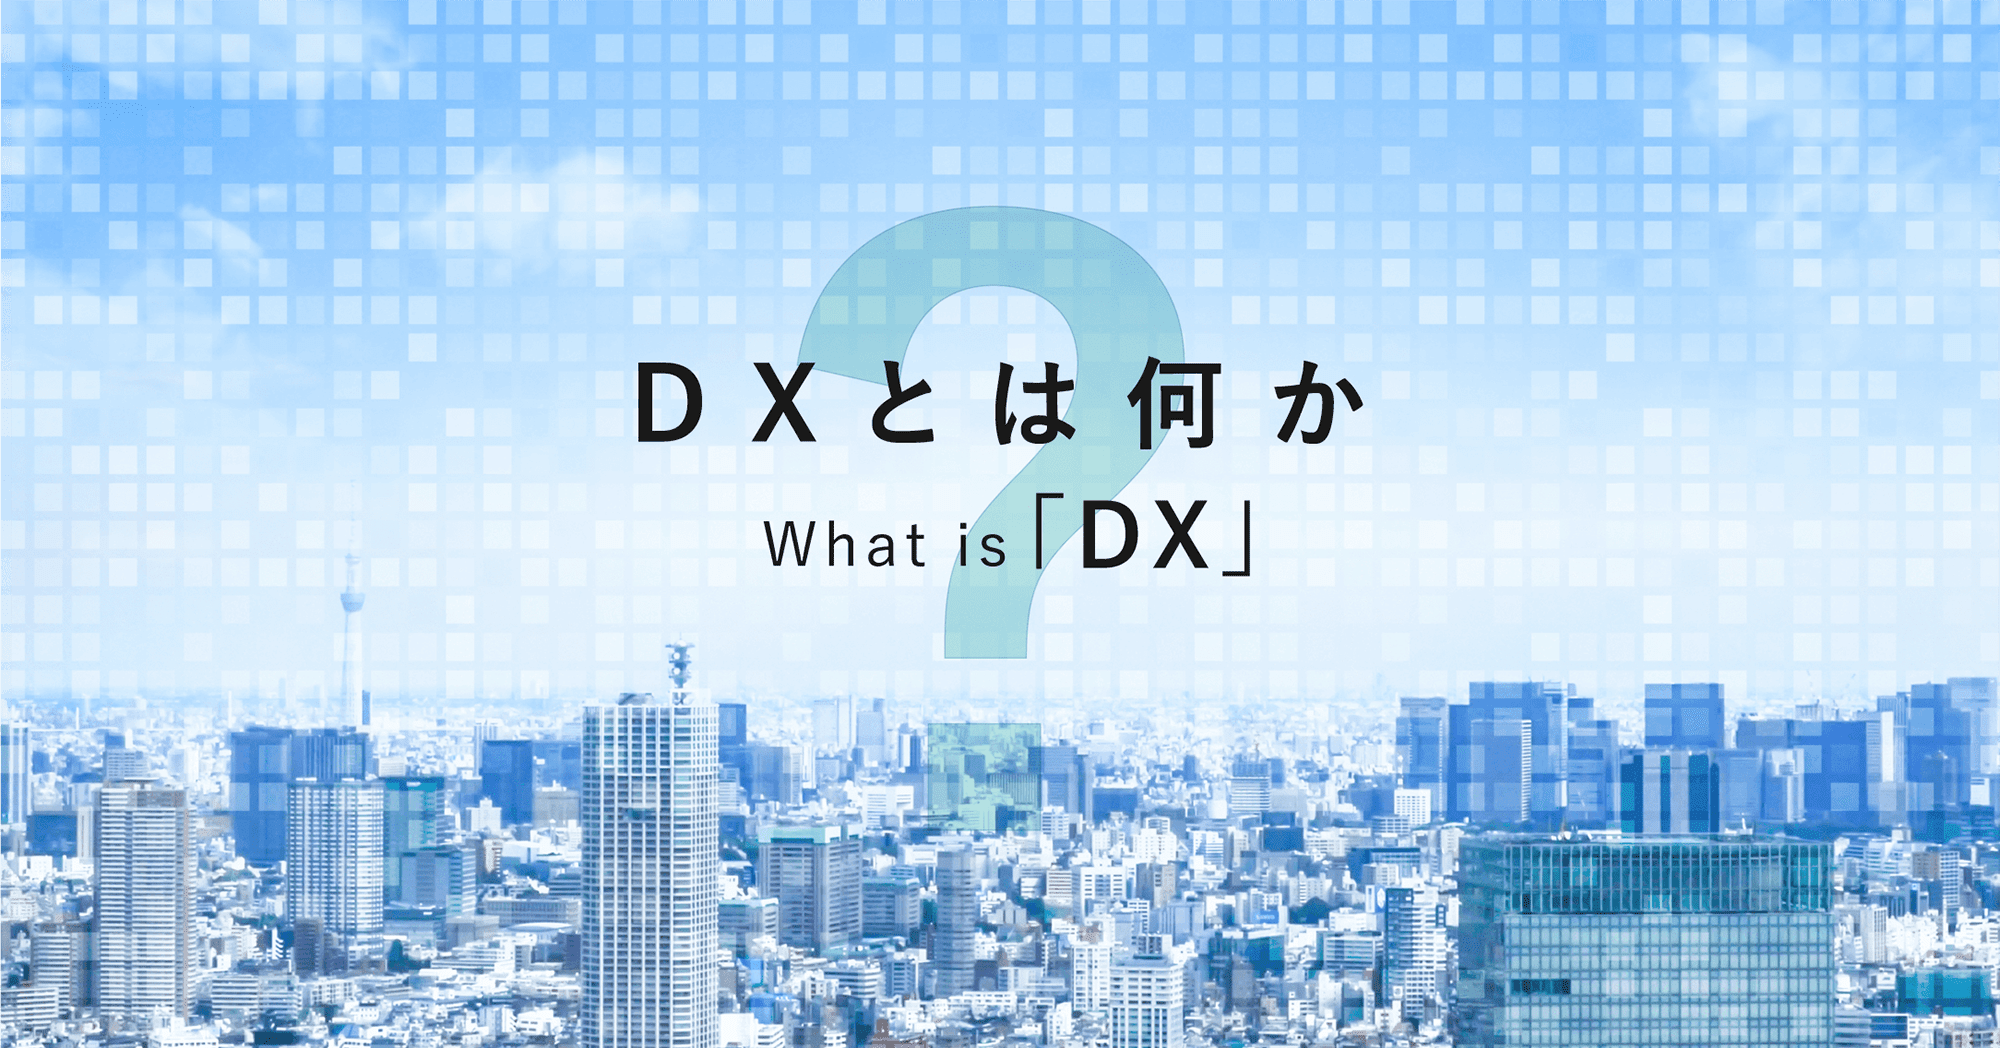 DX（デジタルトランスフォーメーション）解説コラムのメインイメージ画像